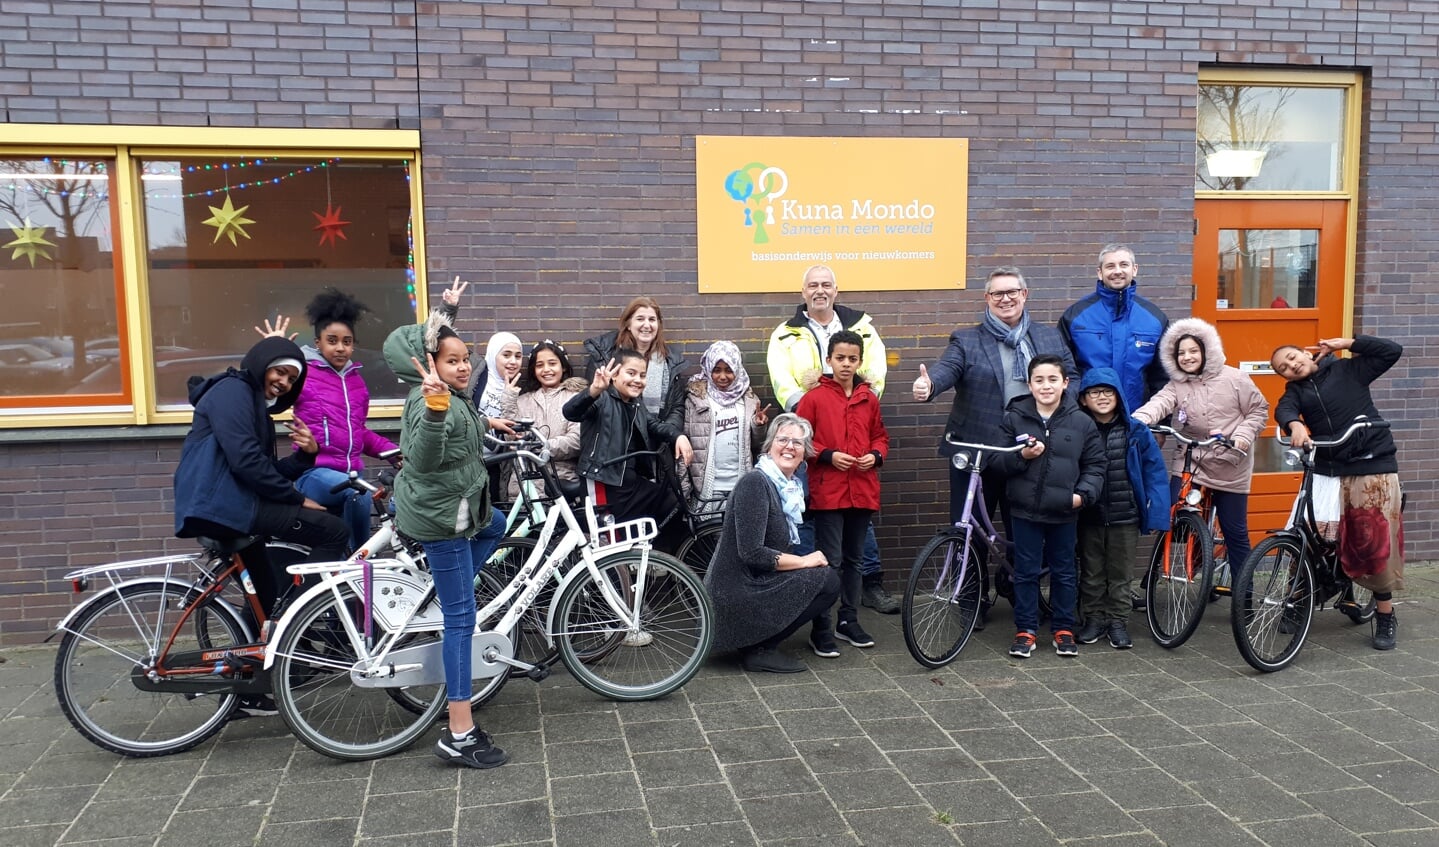 Met ingang van januari kunnen de leerlingen van Kuna Mondo leren fietsen. Met dank aan Stadsverwarming Purmerend en De Graaf Afvalbeheer 